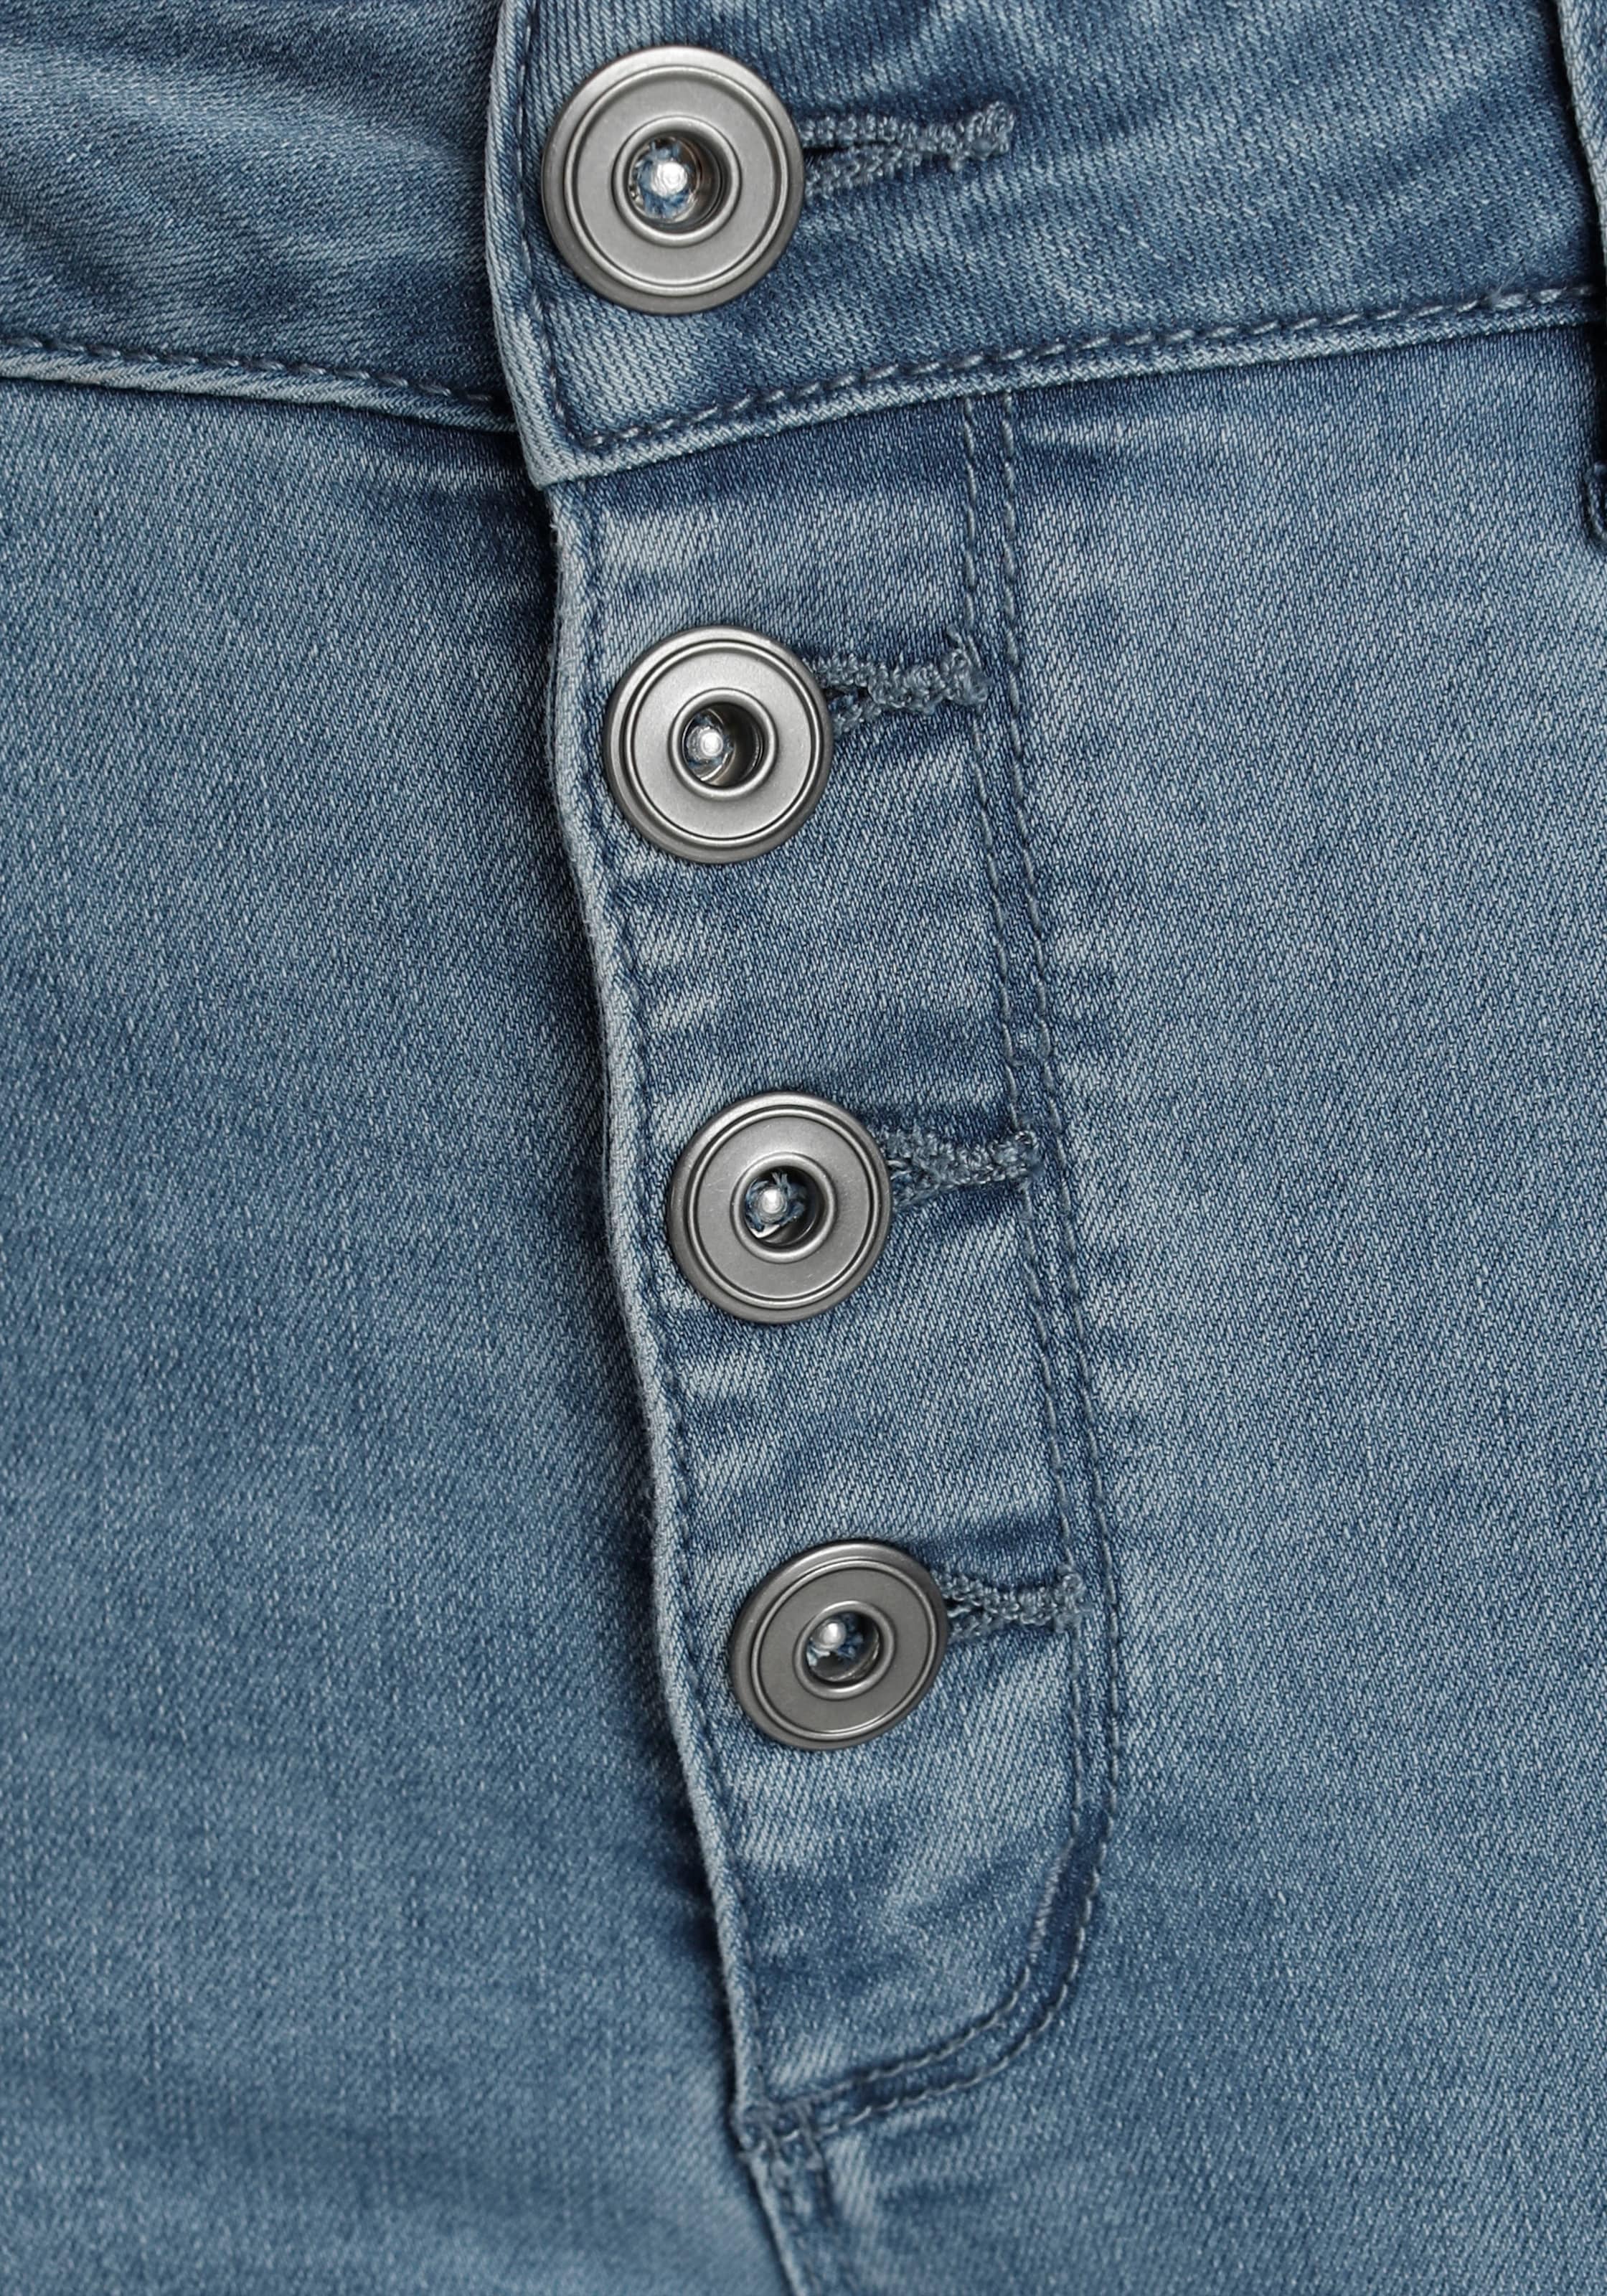 Bootcut-Form OTTO in Länge knöchelfreier Ankle-Jeans, in bei online ausgestellter AJC